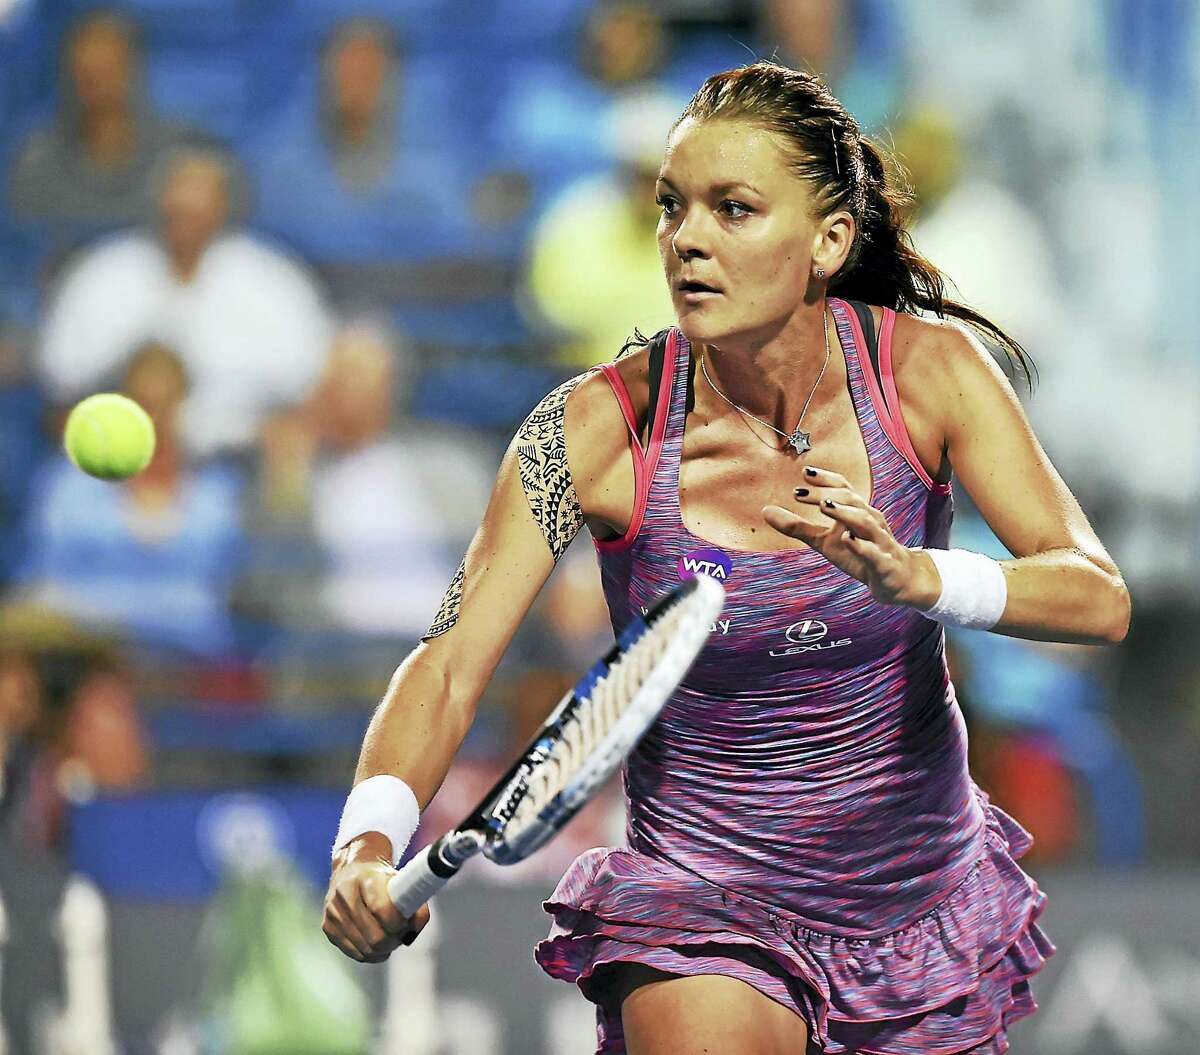 Agnieszka Radwanska defeated Belgium’s Kristen Flipkens in a quarterfinal match on Thursday.